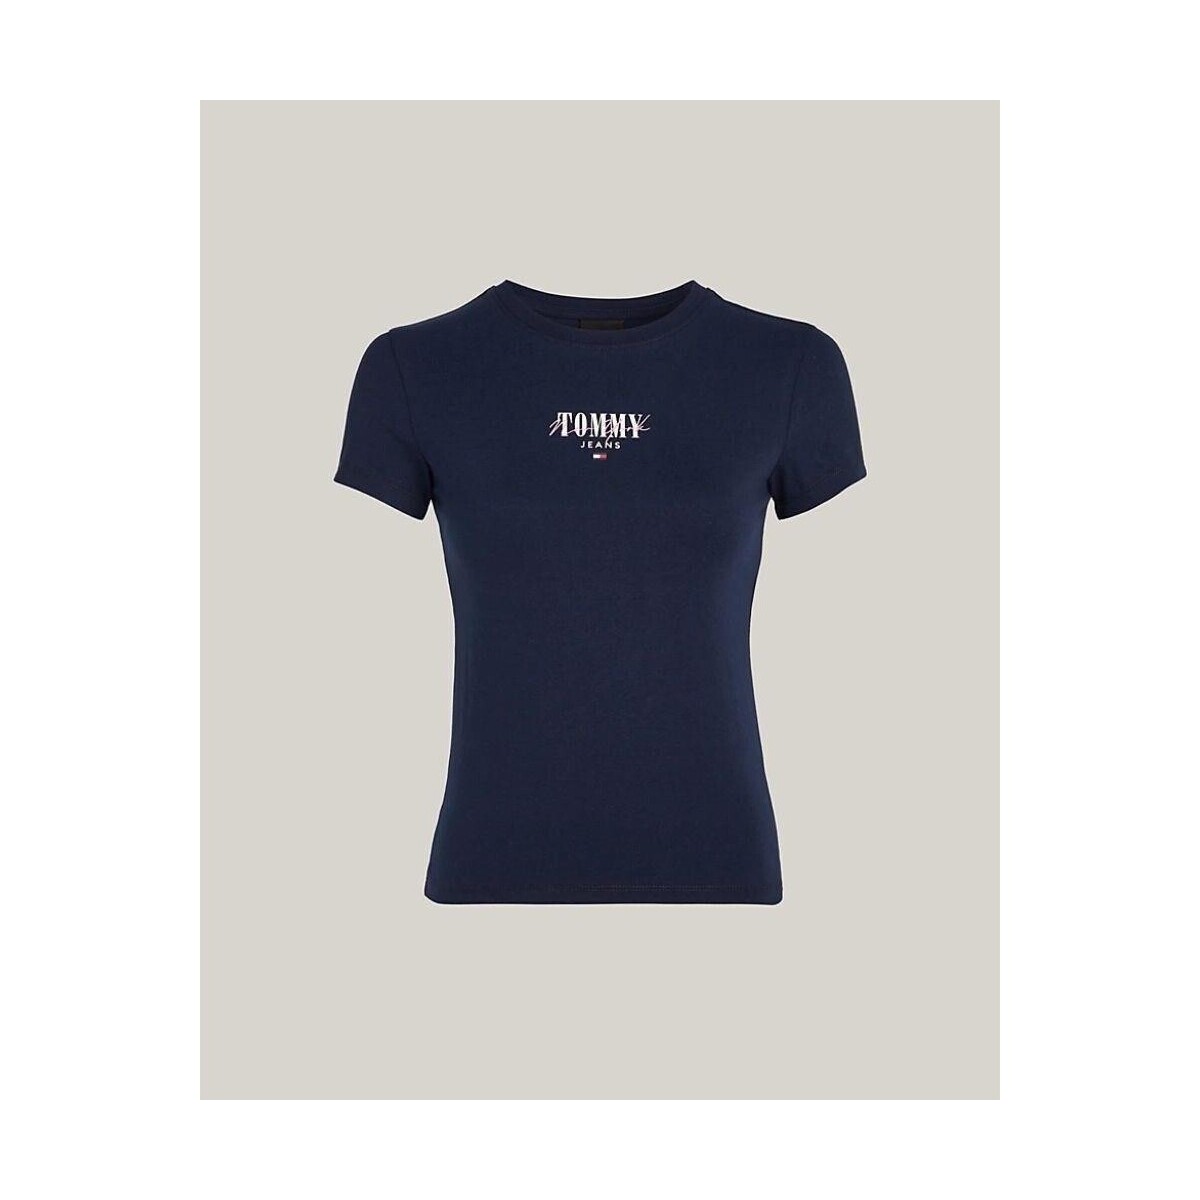 Υφασμάτινα Γυναίκα T-shirts & Μπλούζες Tommy Hilfiger DW0DW17839C1G Μπλέ